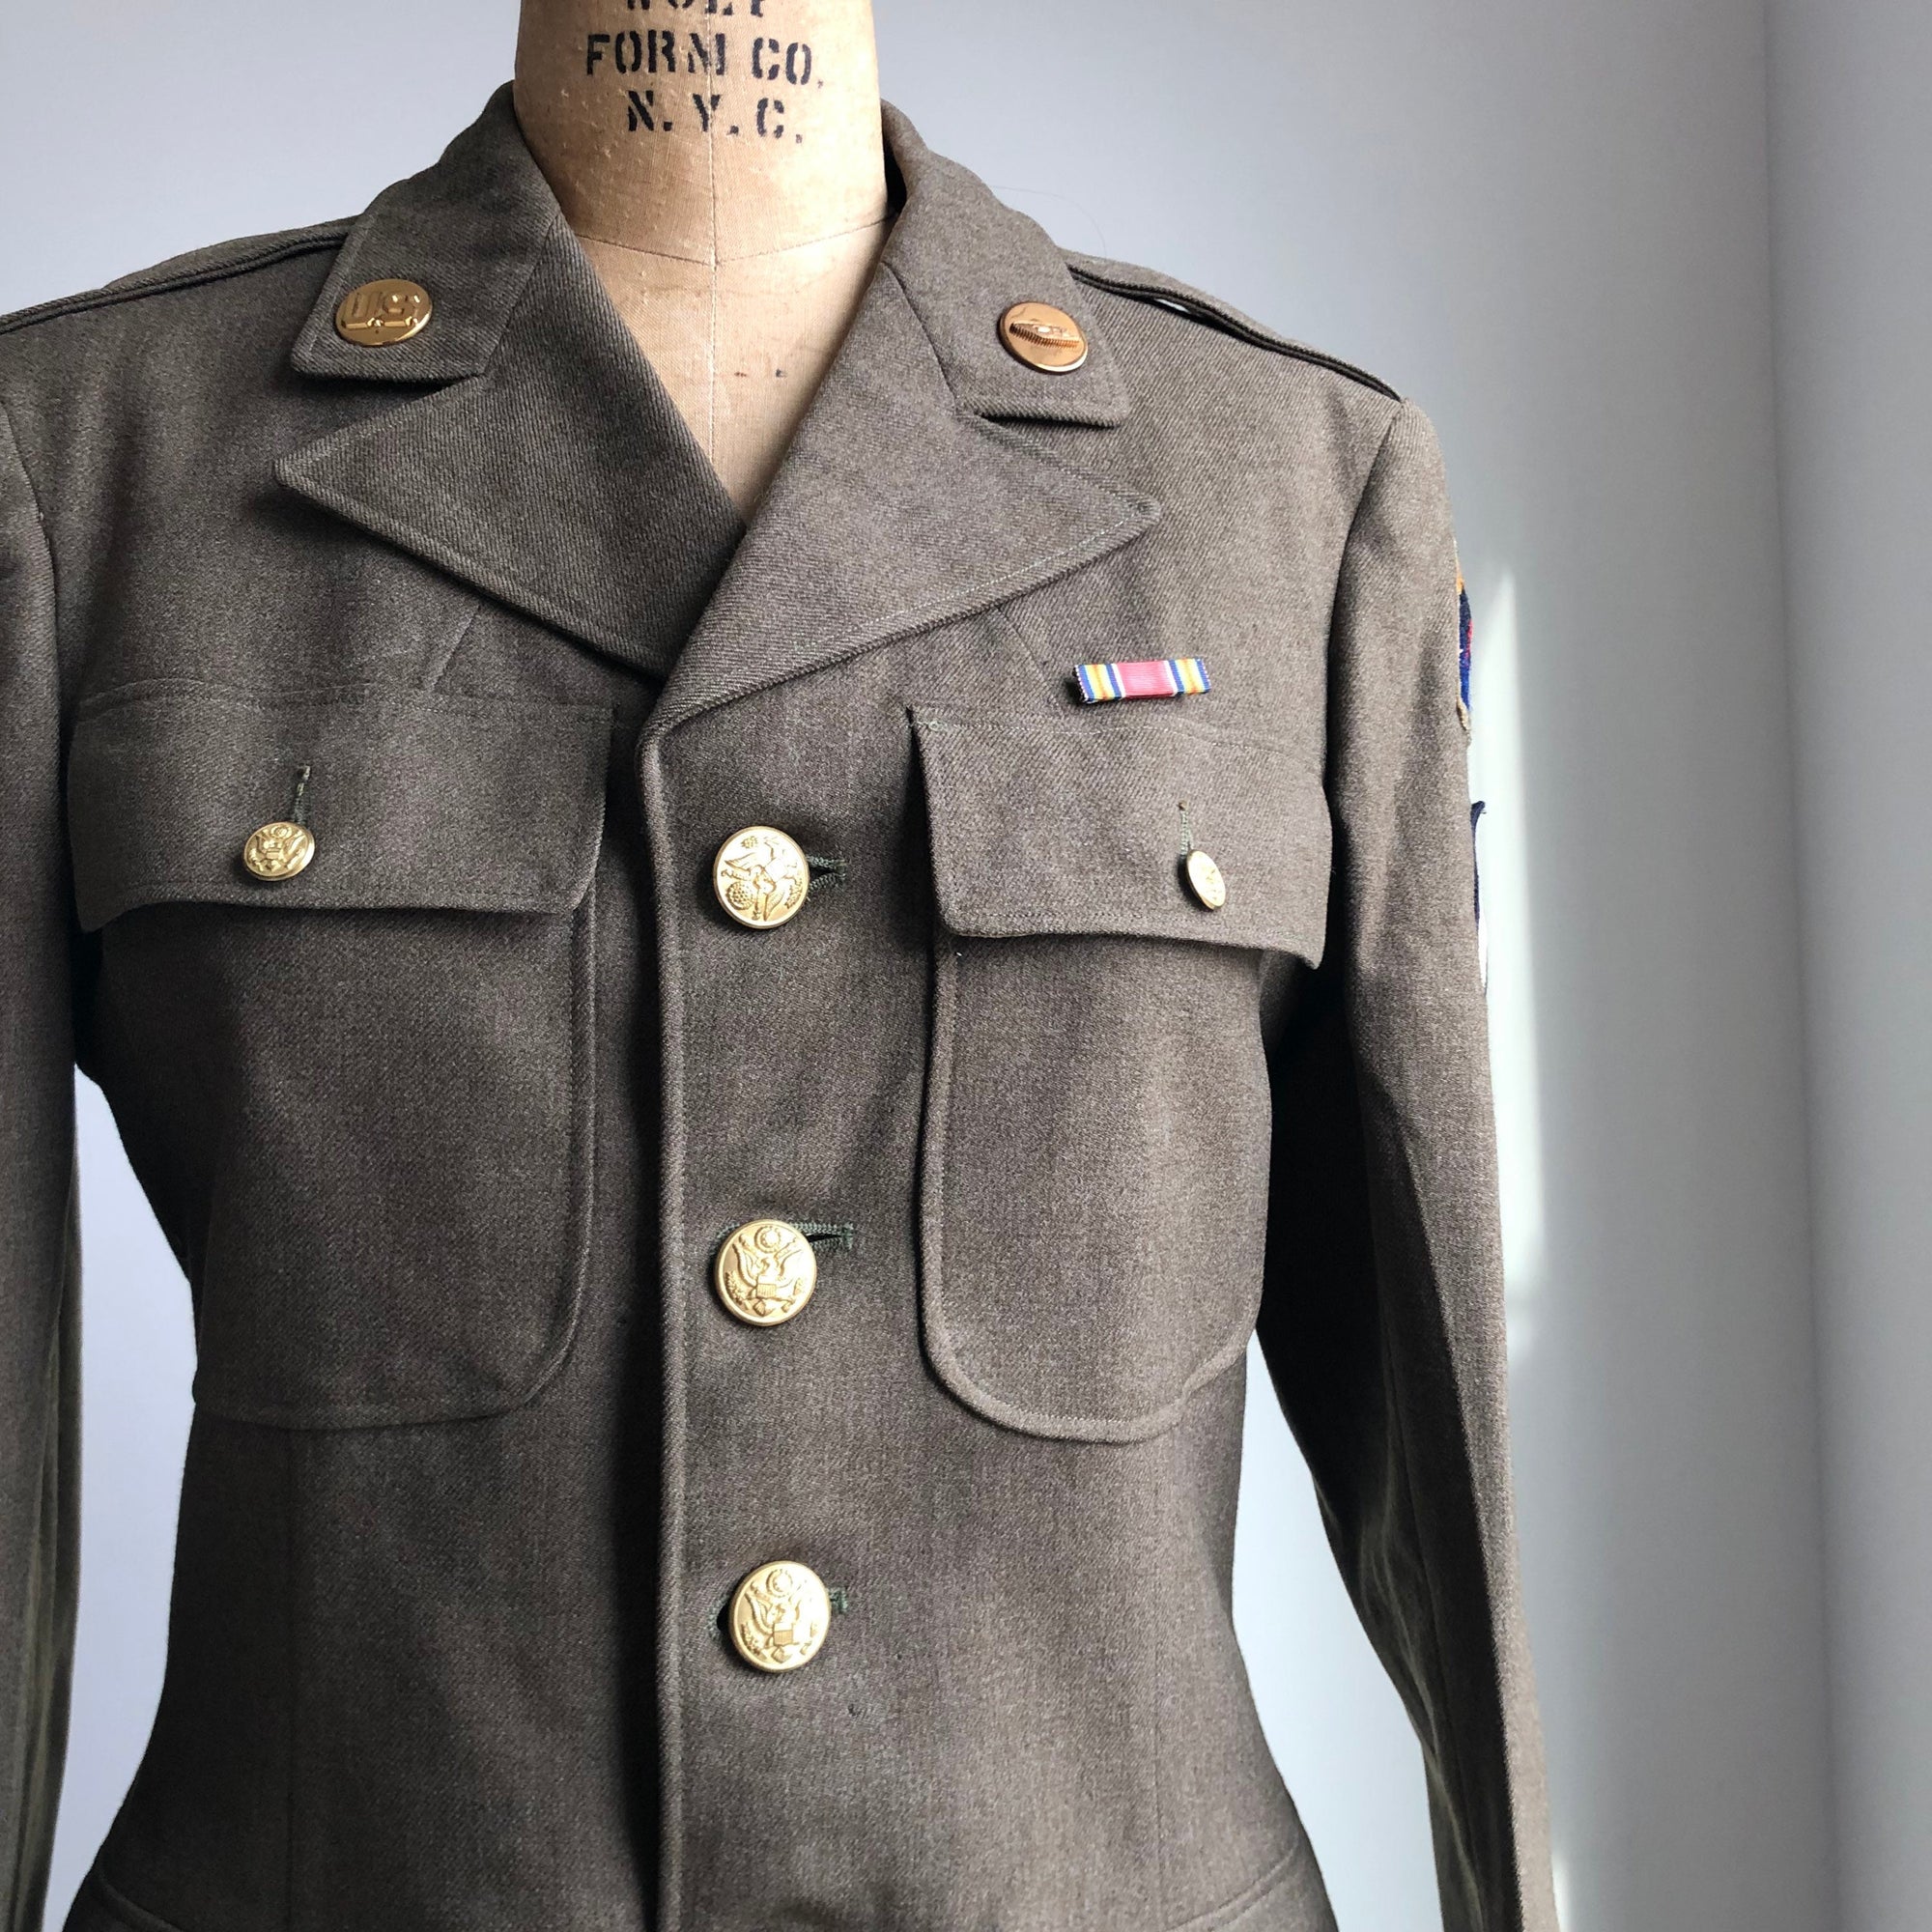 WWII US Vintage Army Military Uniform Jacket Blazer Authentic WW2